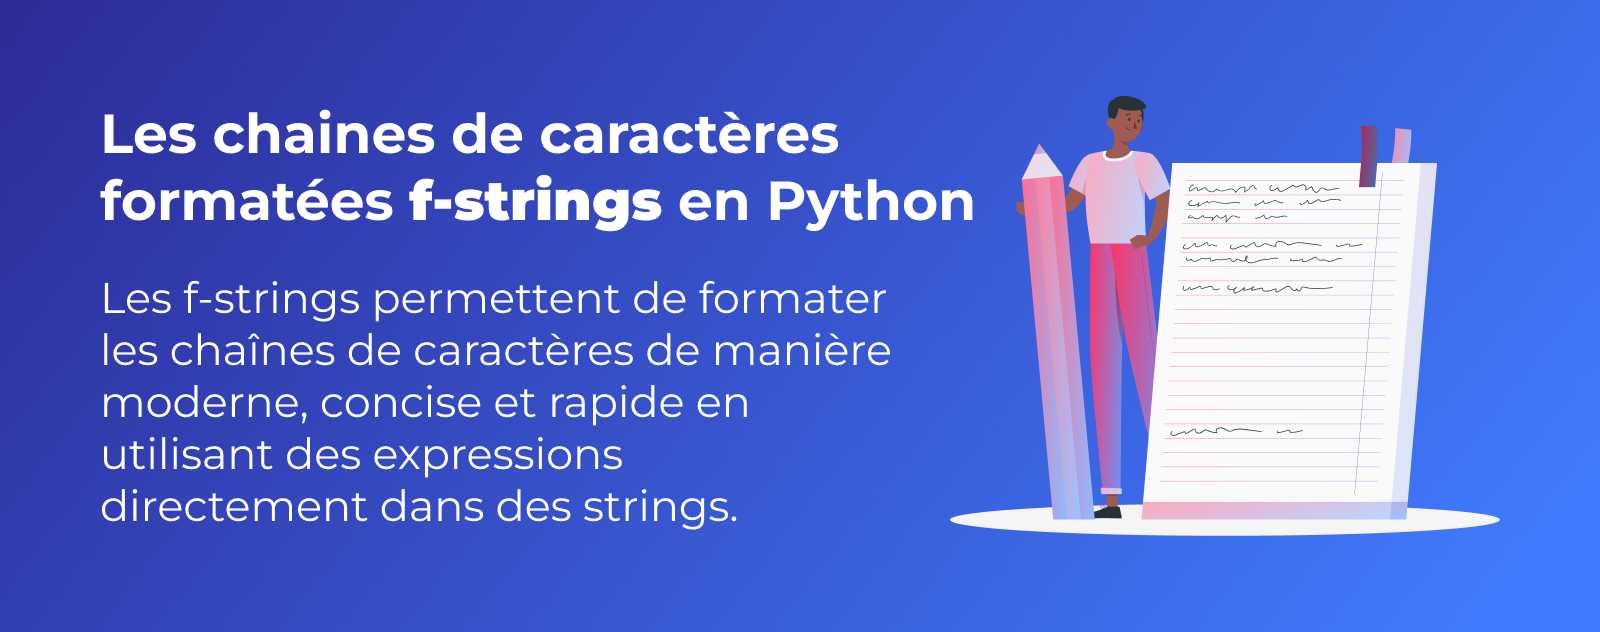 Les chaines de caractères formatées f-strings en Python